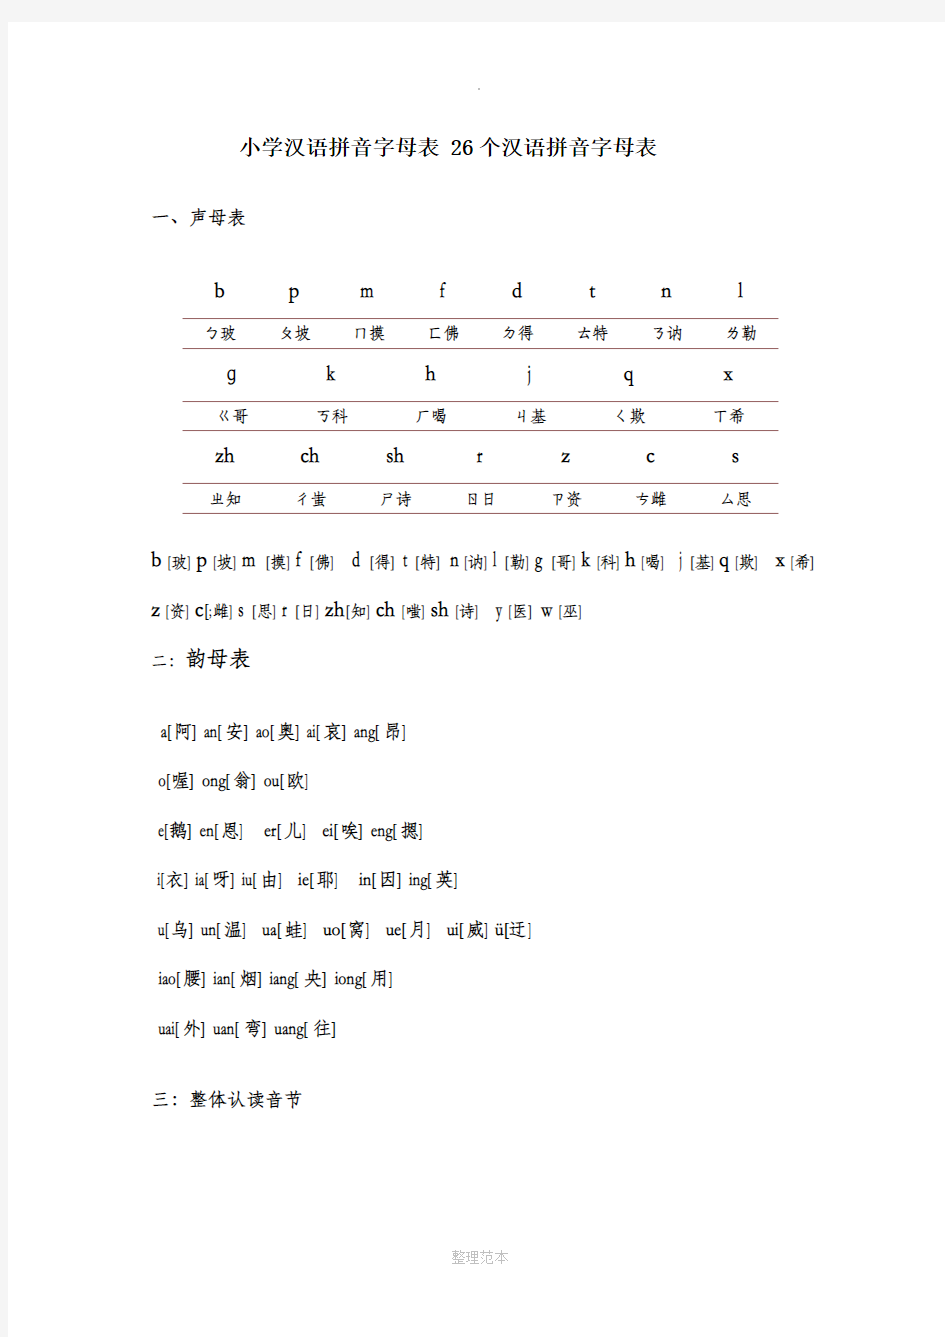 小学汉语拼音字母表-26个汉语拼音字母表